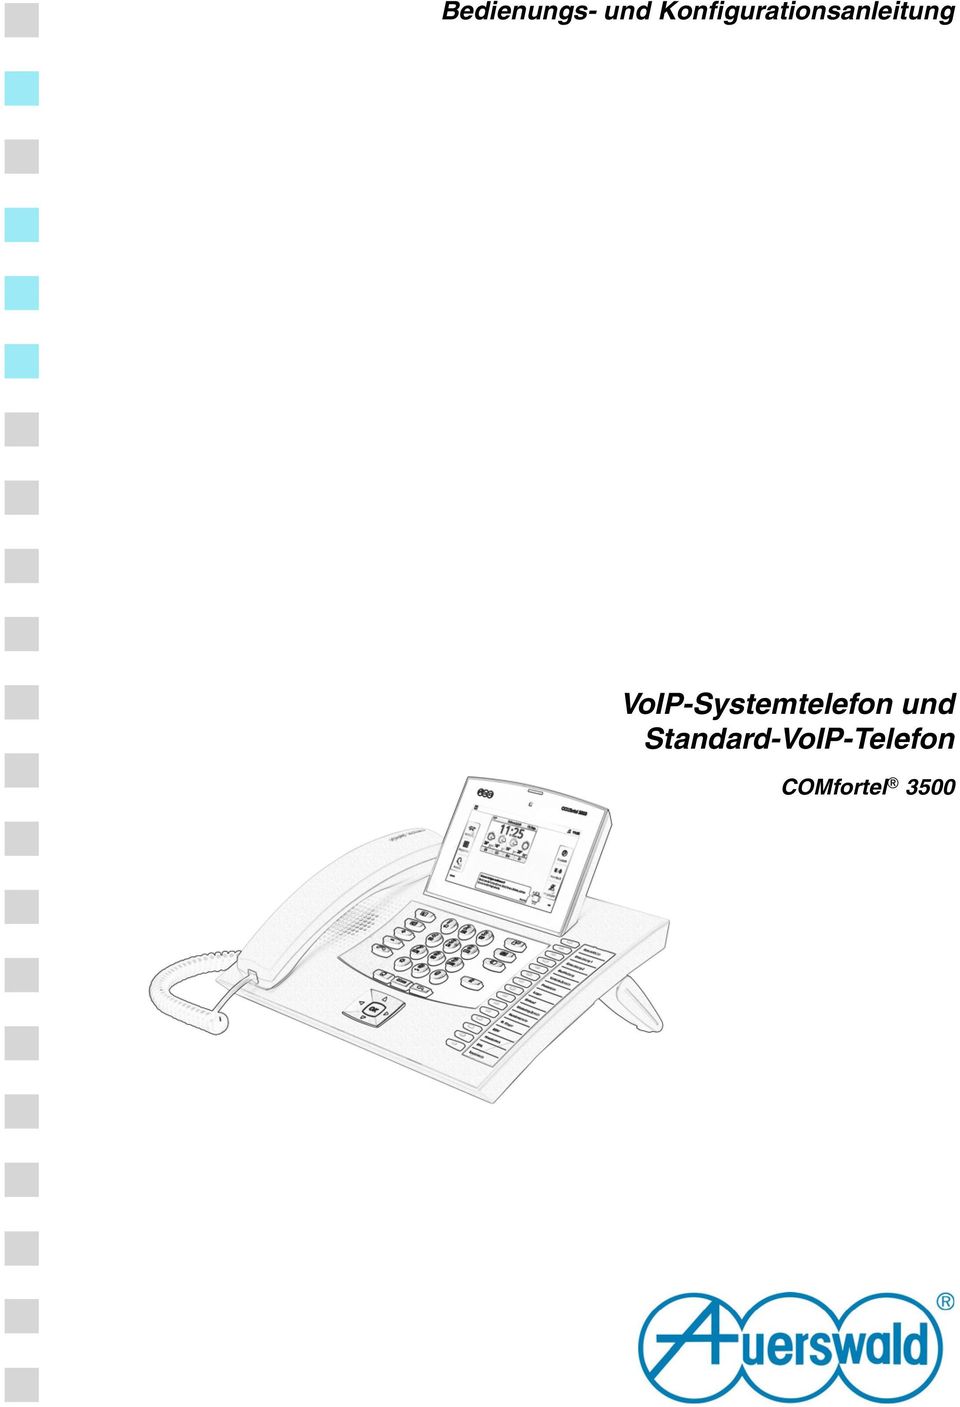 VoIP-Systemtelefon und